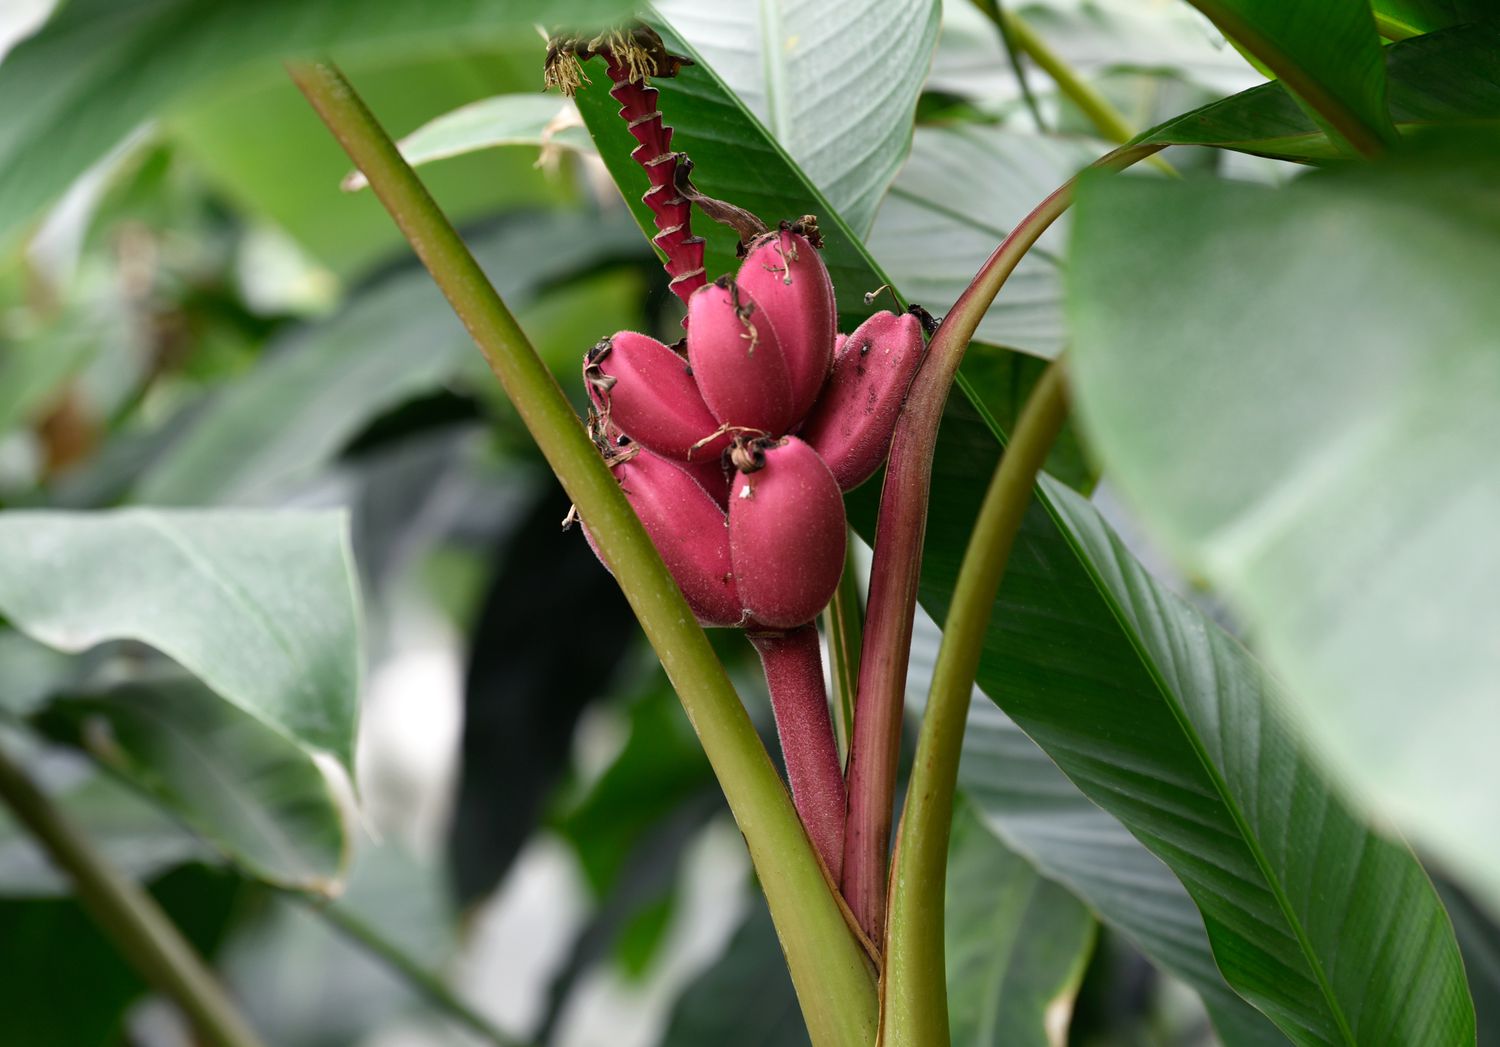 Samtbananenbaum mit kleinen rosafarbenen und pelzigen runden Bananen, die zwischen dicken Stämmen wachsen